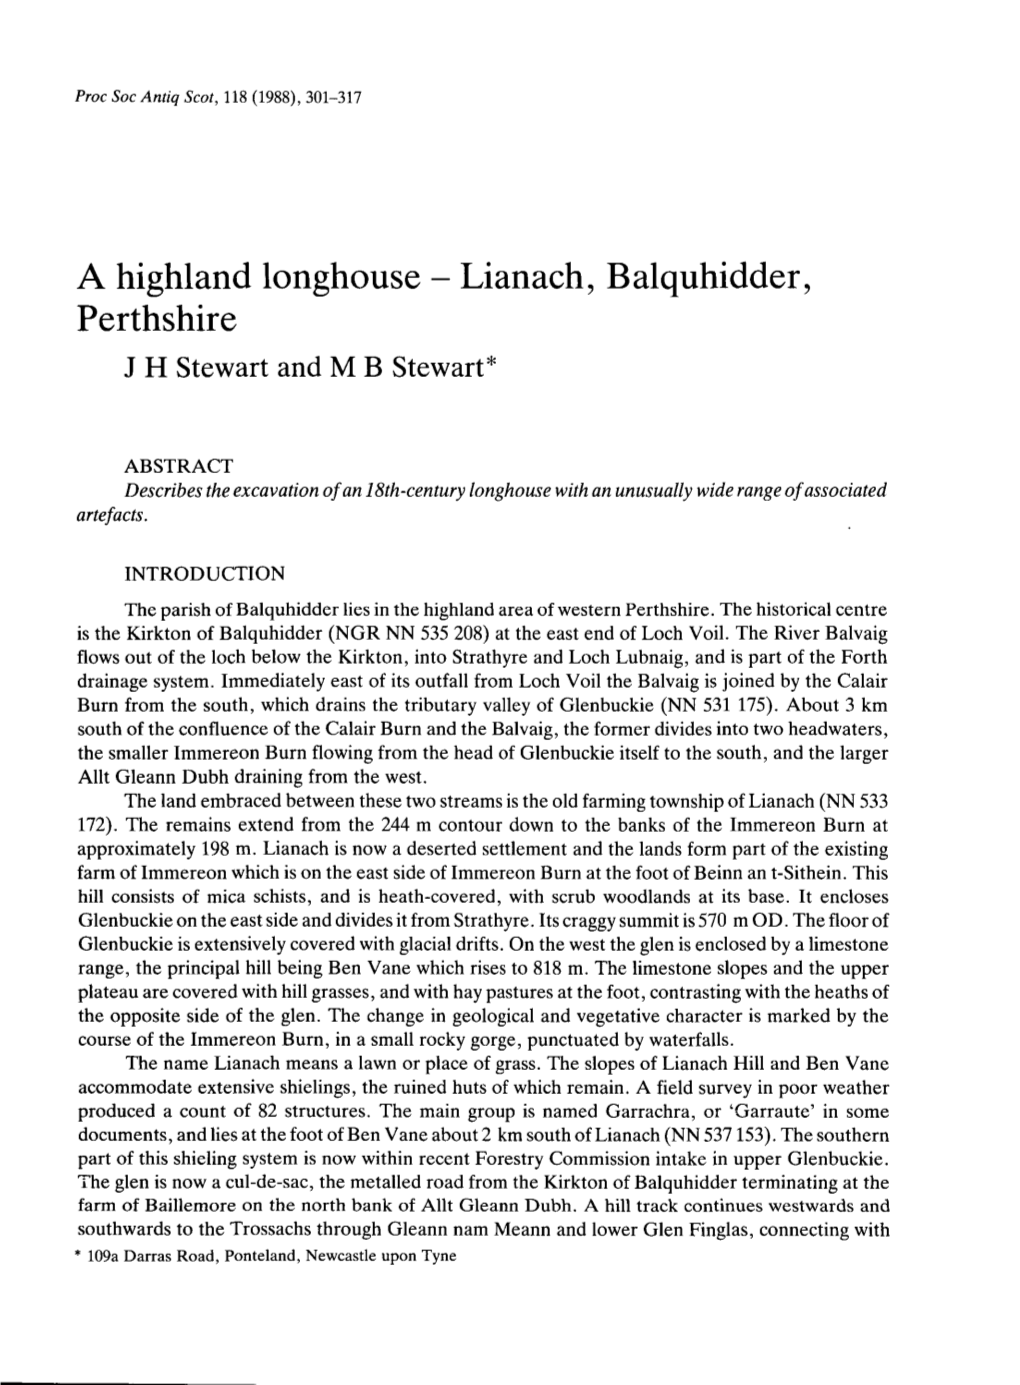 Lianach, Balquhidder, Perthshire J H Stewart and M B Stewart*